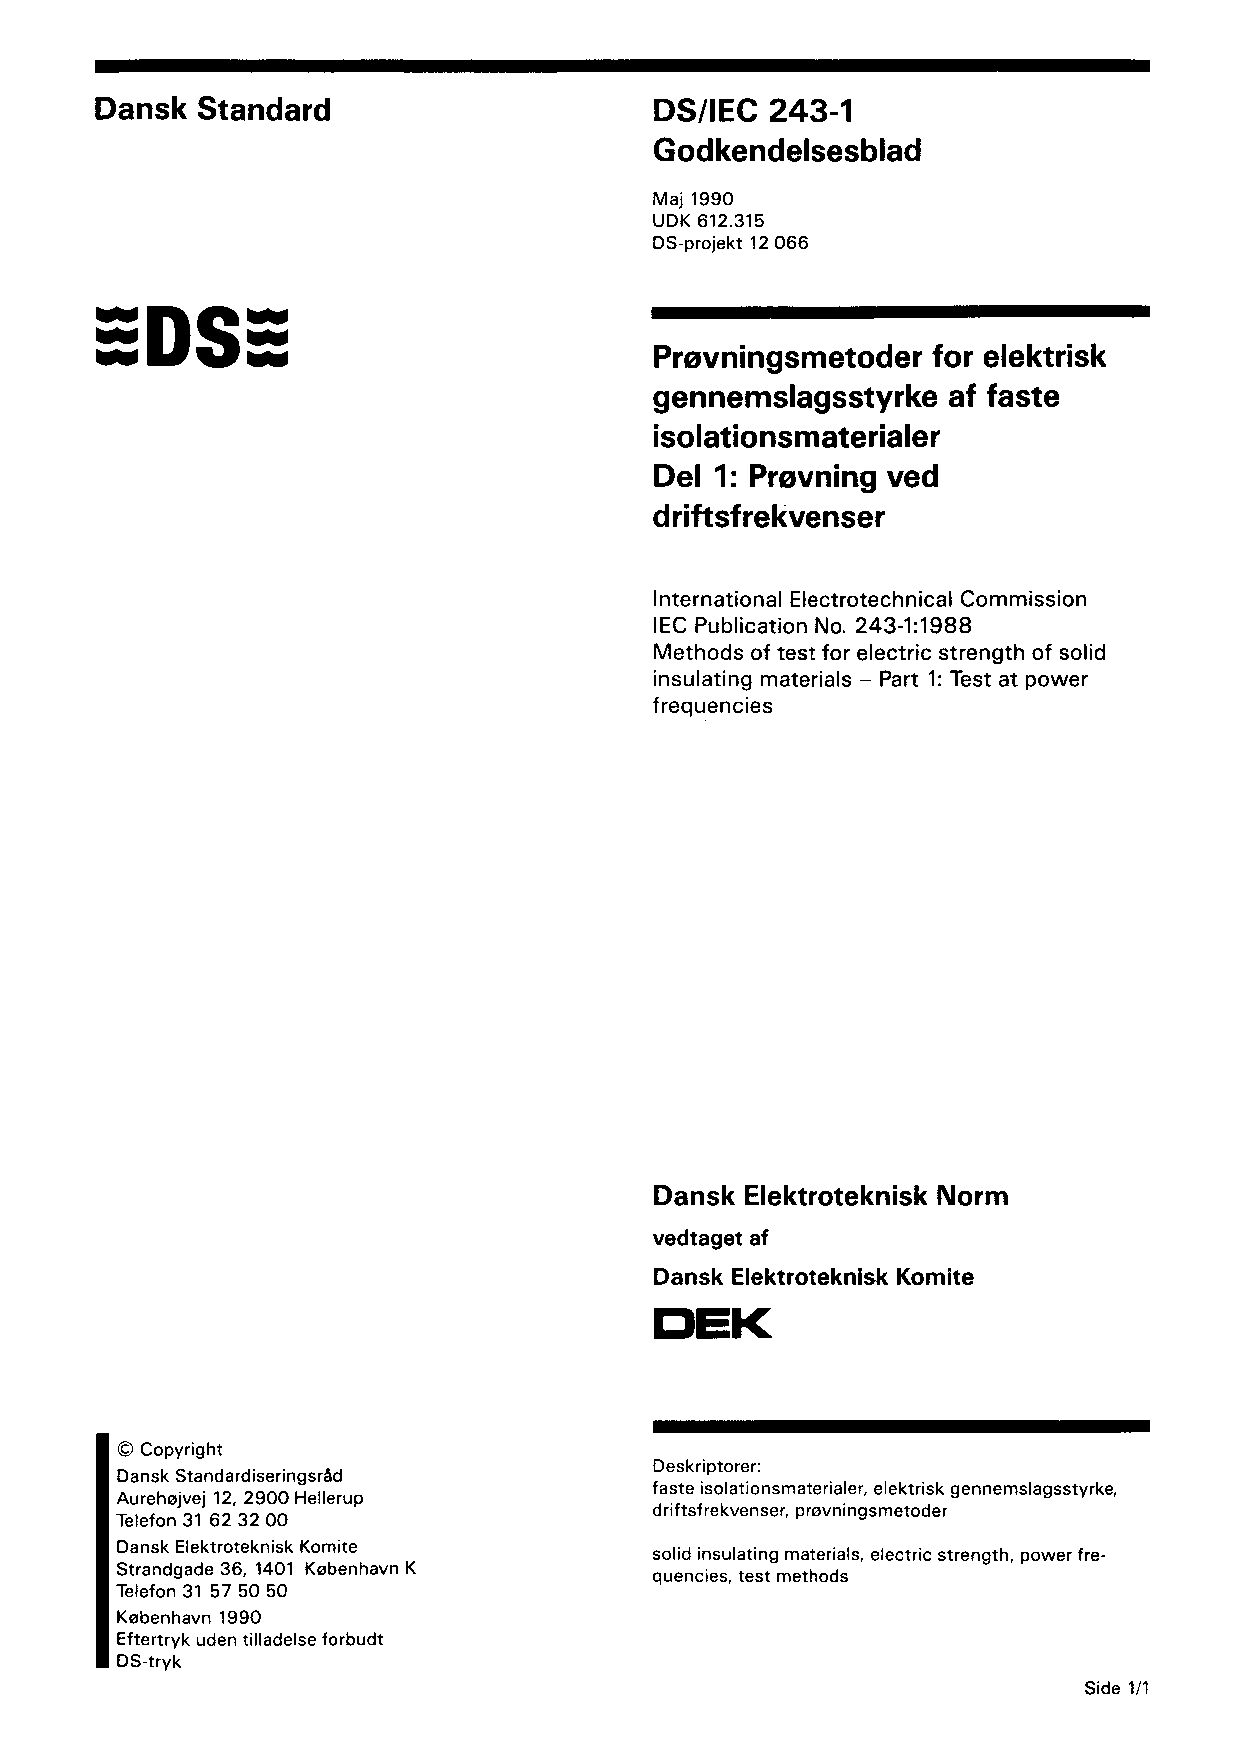 DS/IEC 243-1:1990封面图